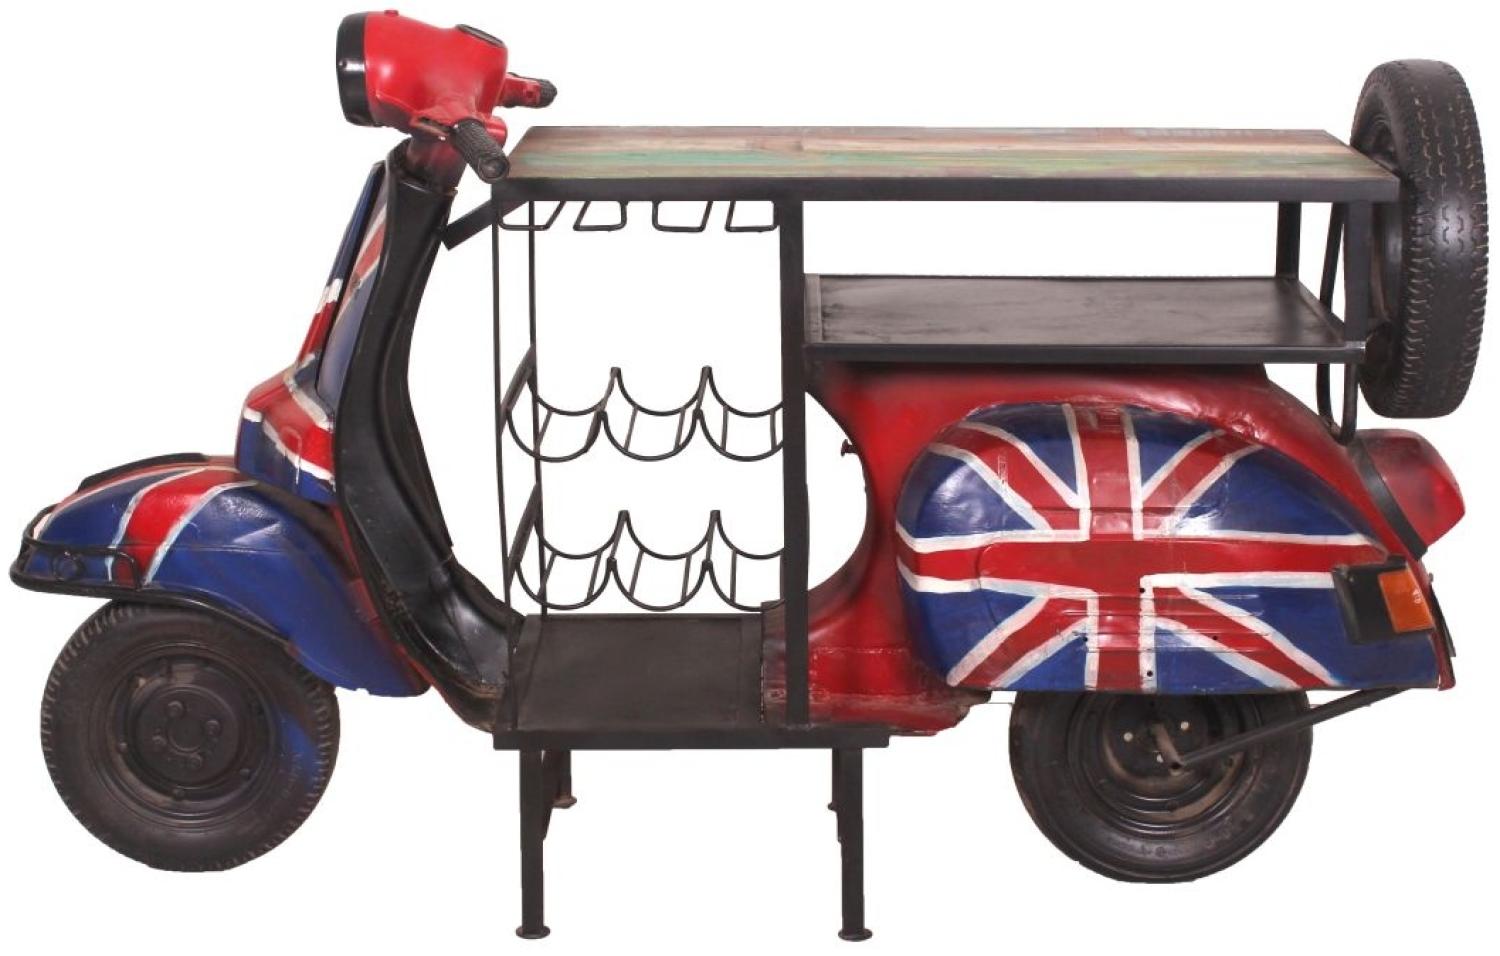 Sit Möbel Stehtisch UK aus einem recyceltem Roller L = 170 x B = 66 x H = 105 cm rot mit britischer Flagge Bild 1